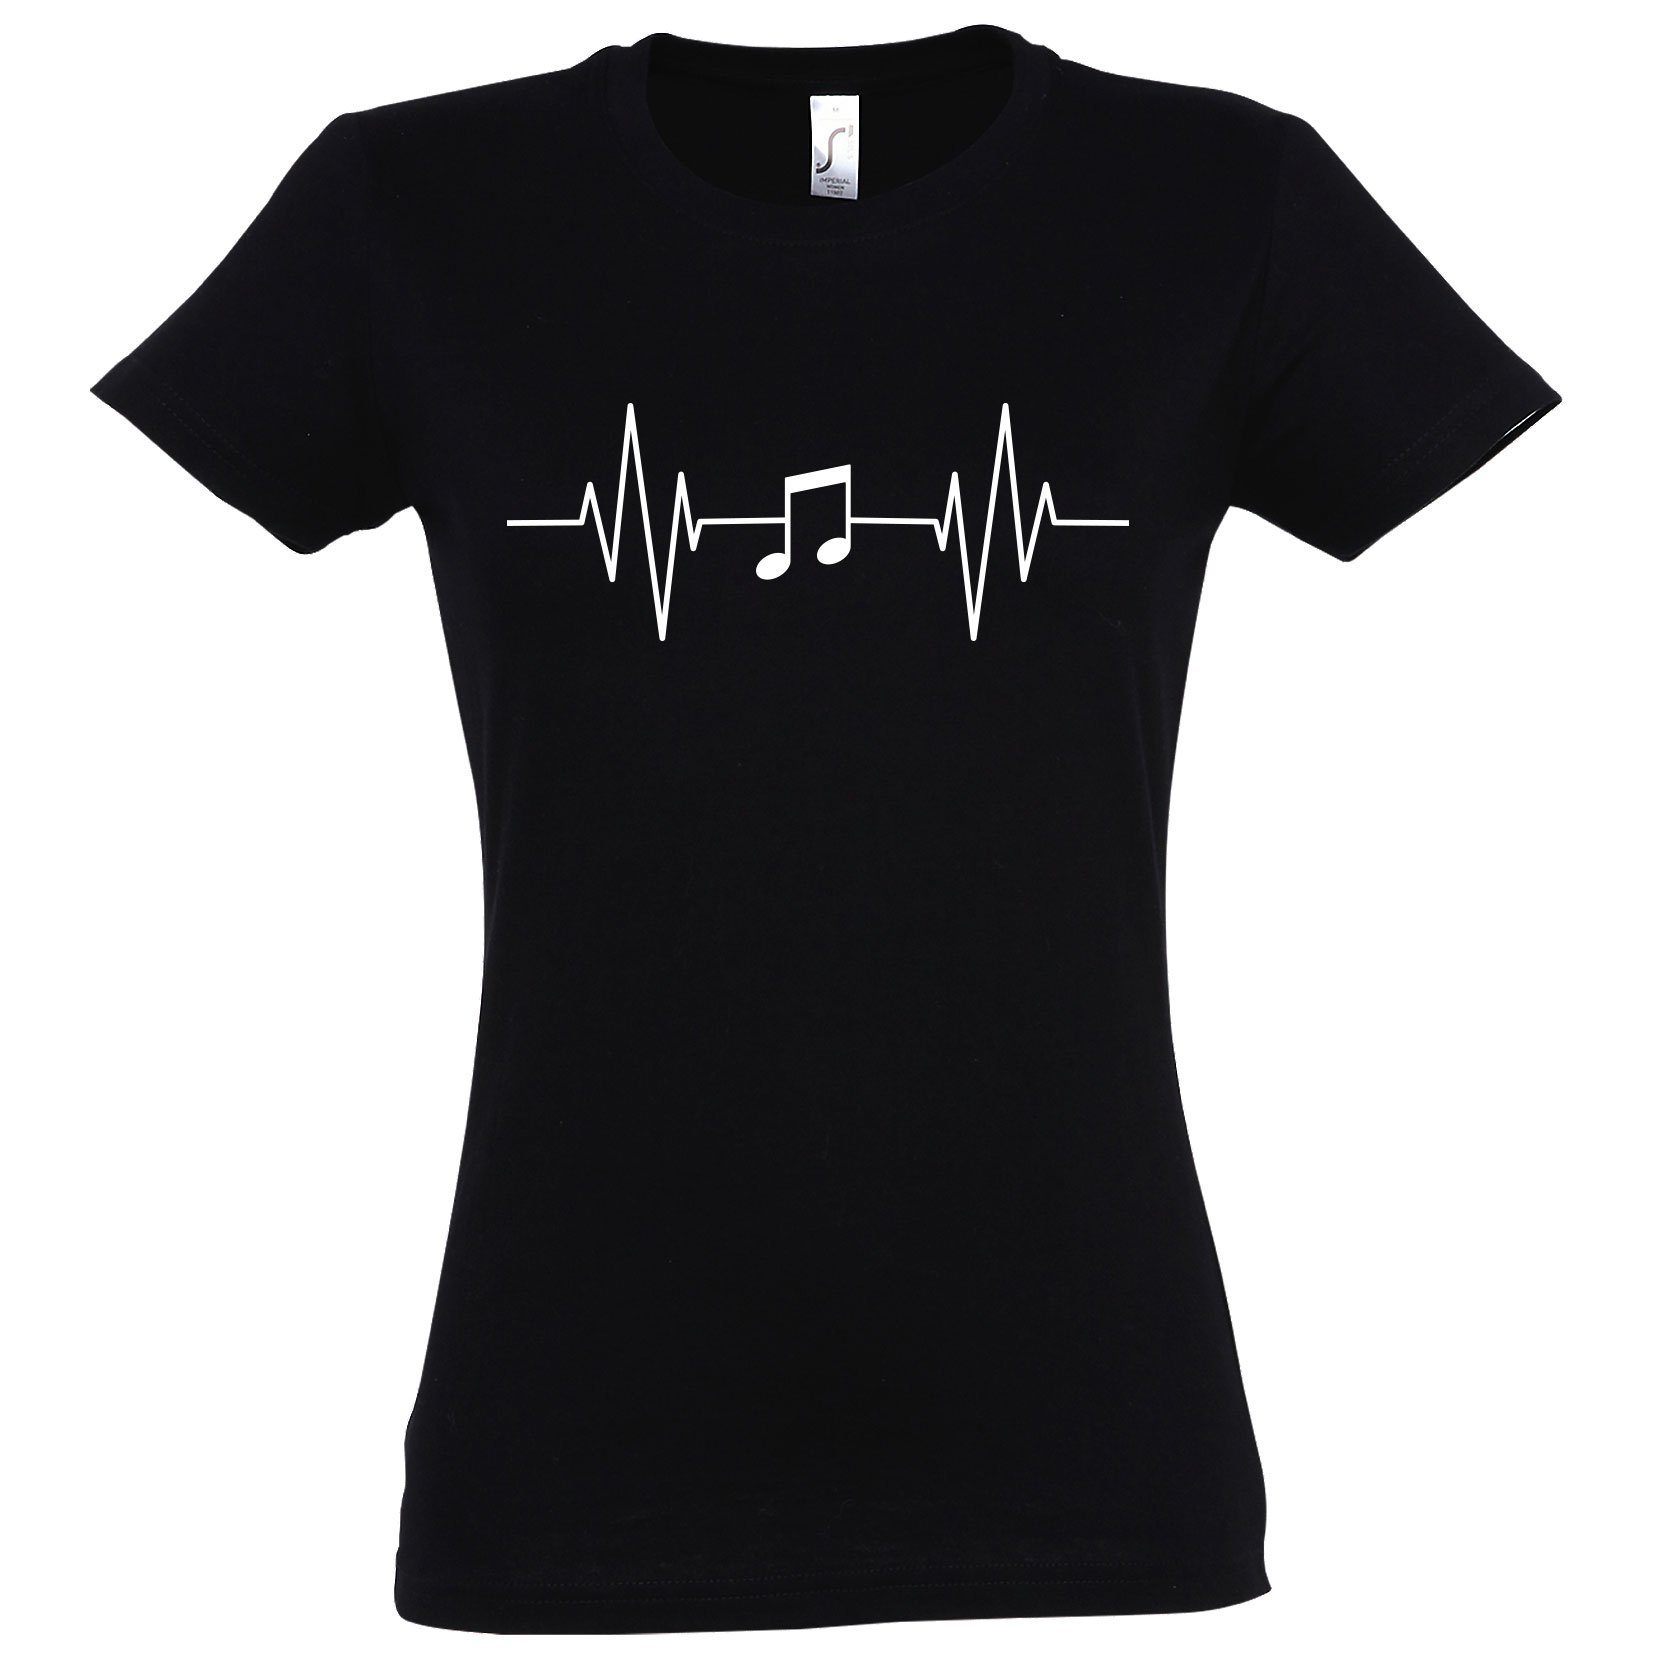 mit Youth T-Shirt Designz Music Note Damen Musik Shirt Schwarz Heartbeat Frontprint